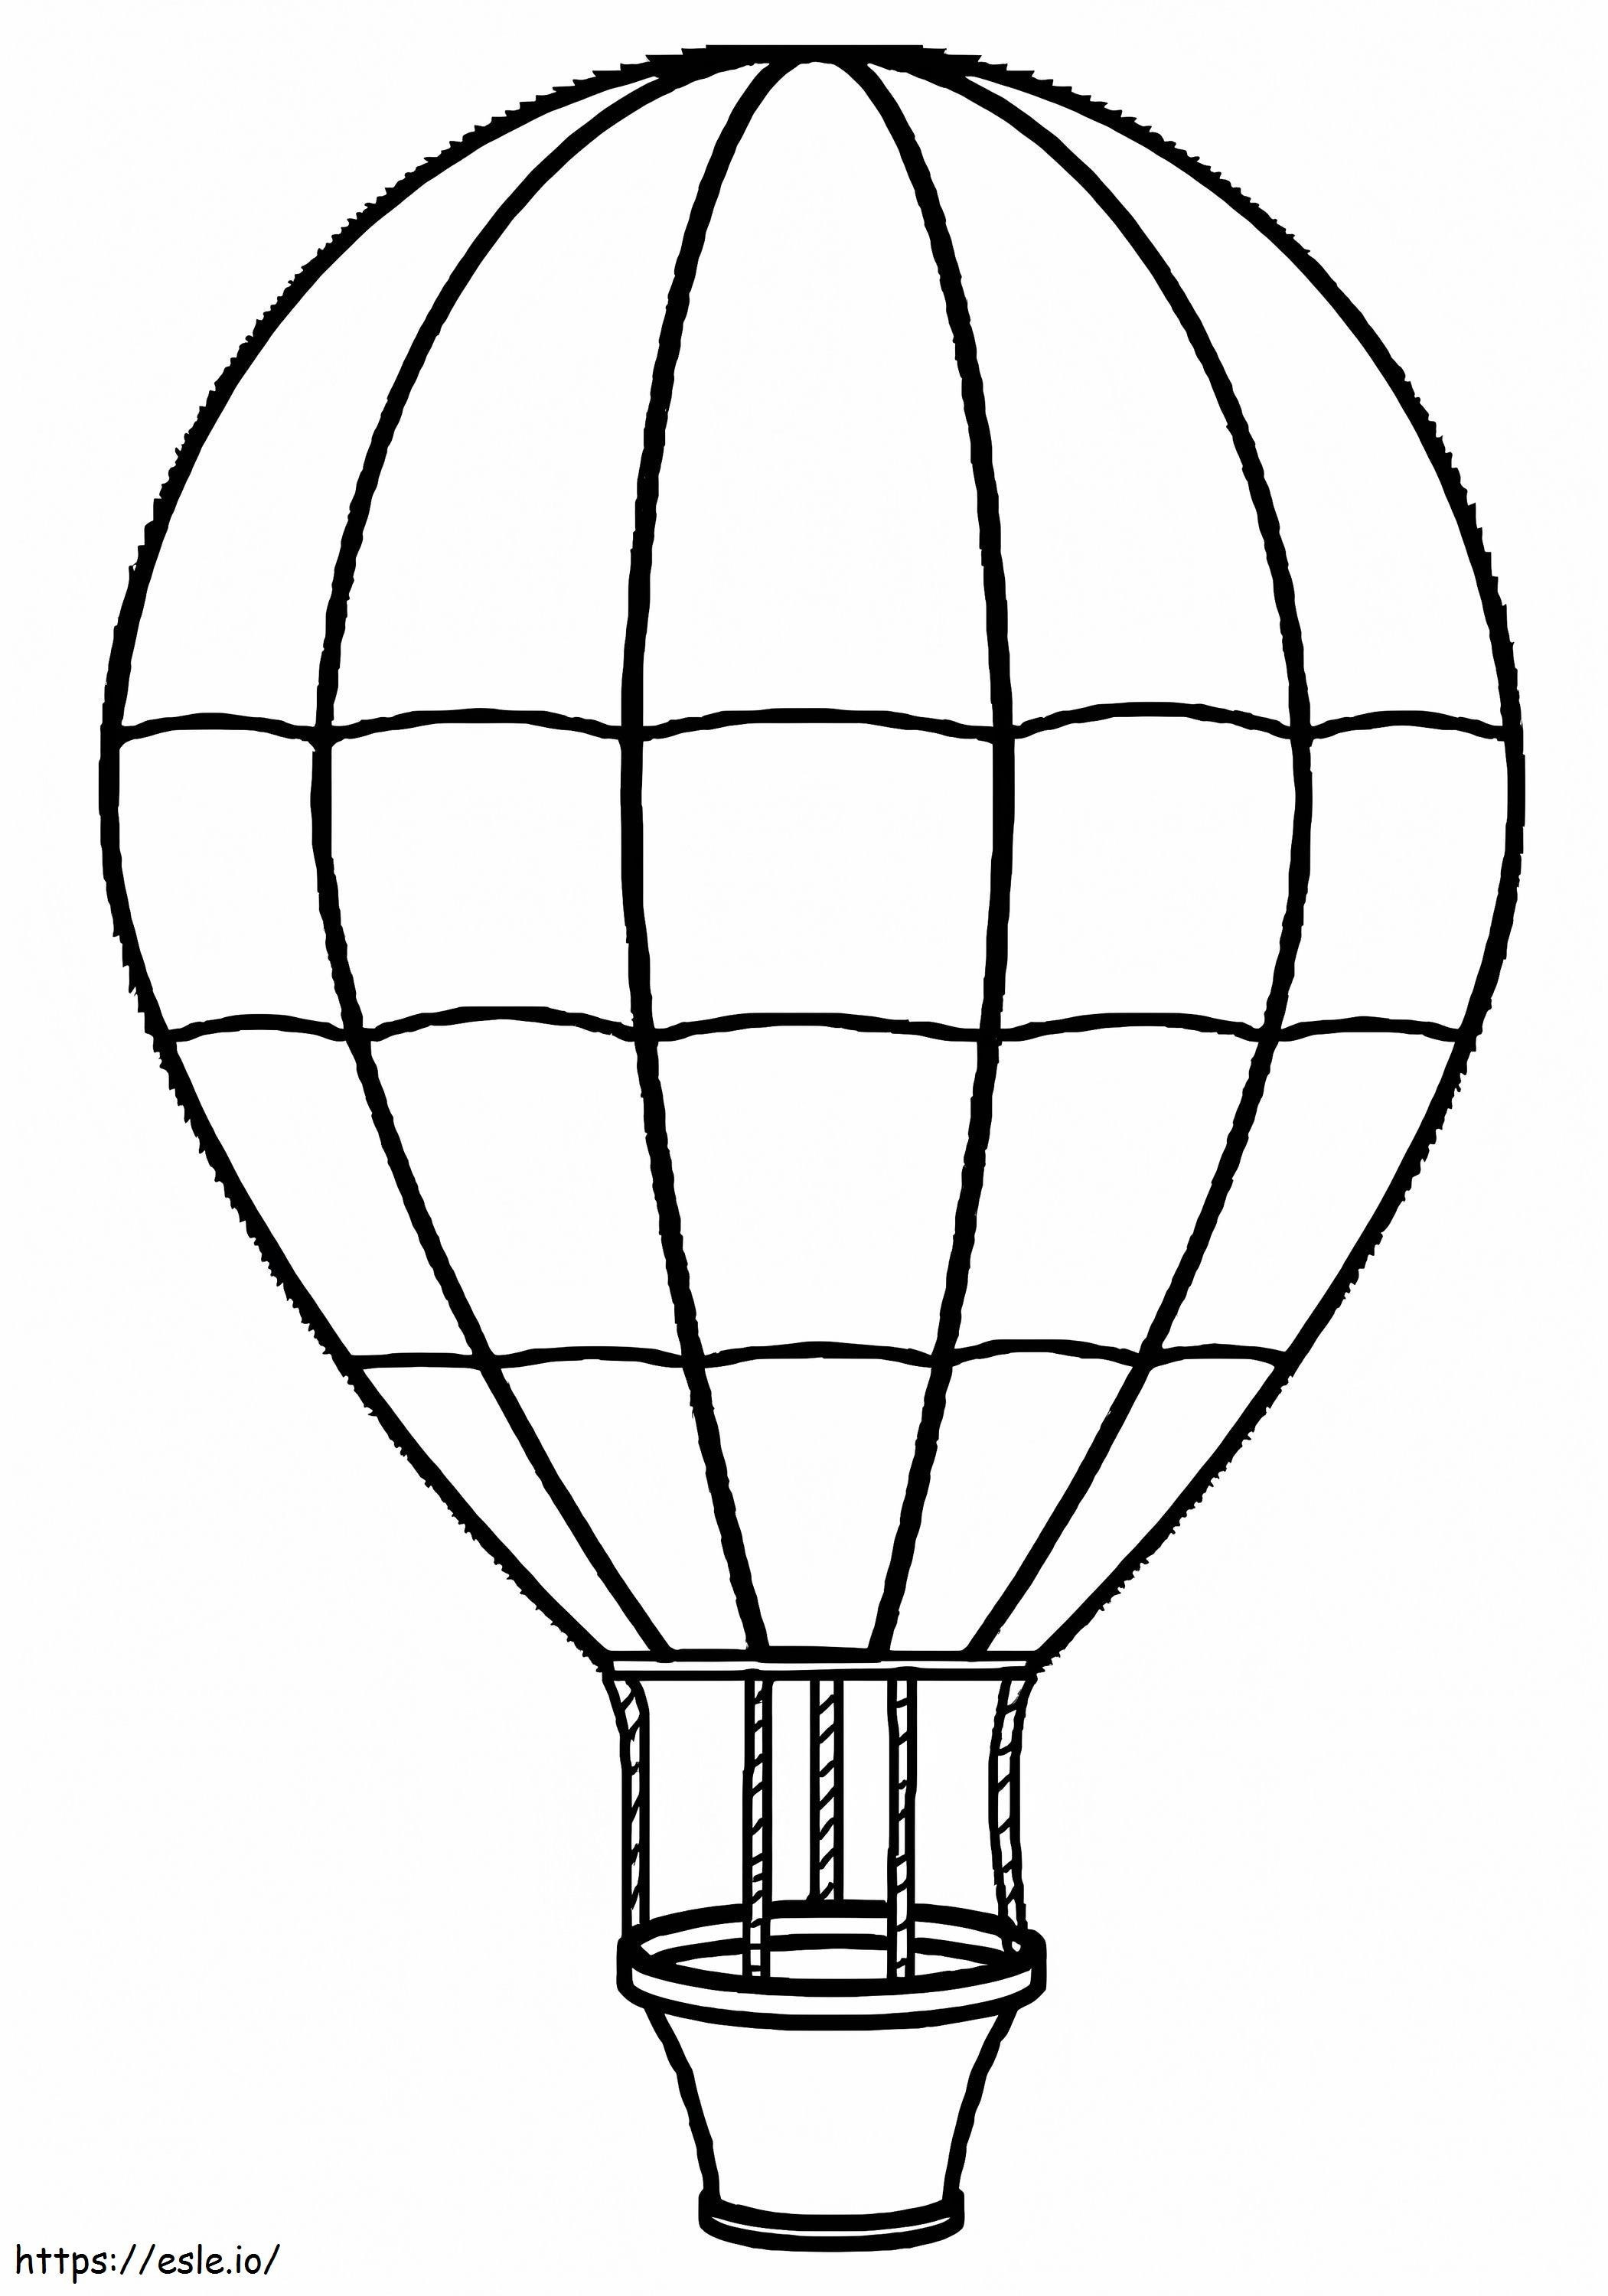 Coloriage Ballon à air chaud unique 2 à imprimer dessin